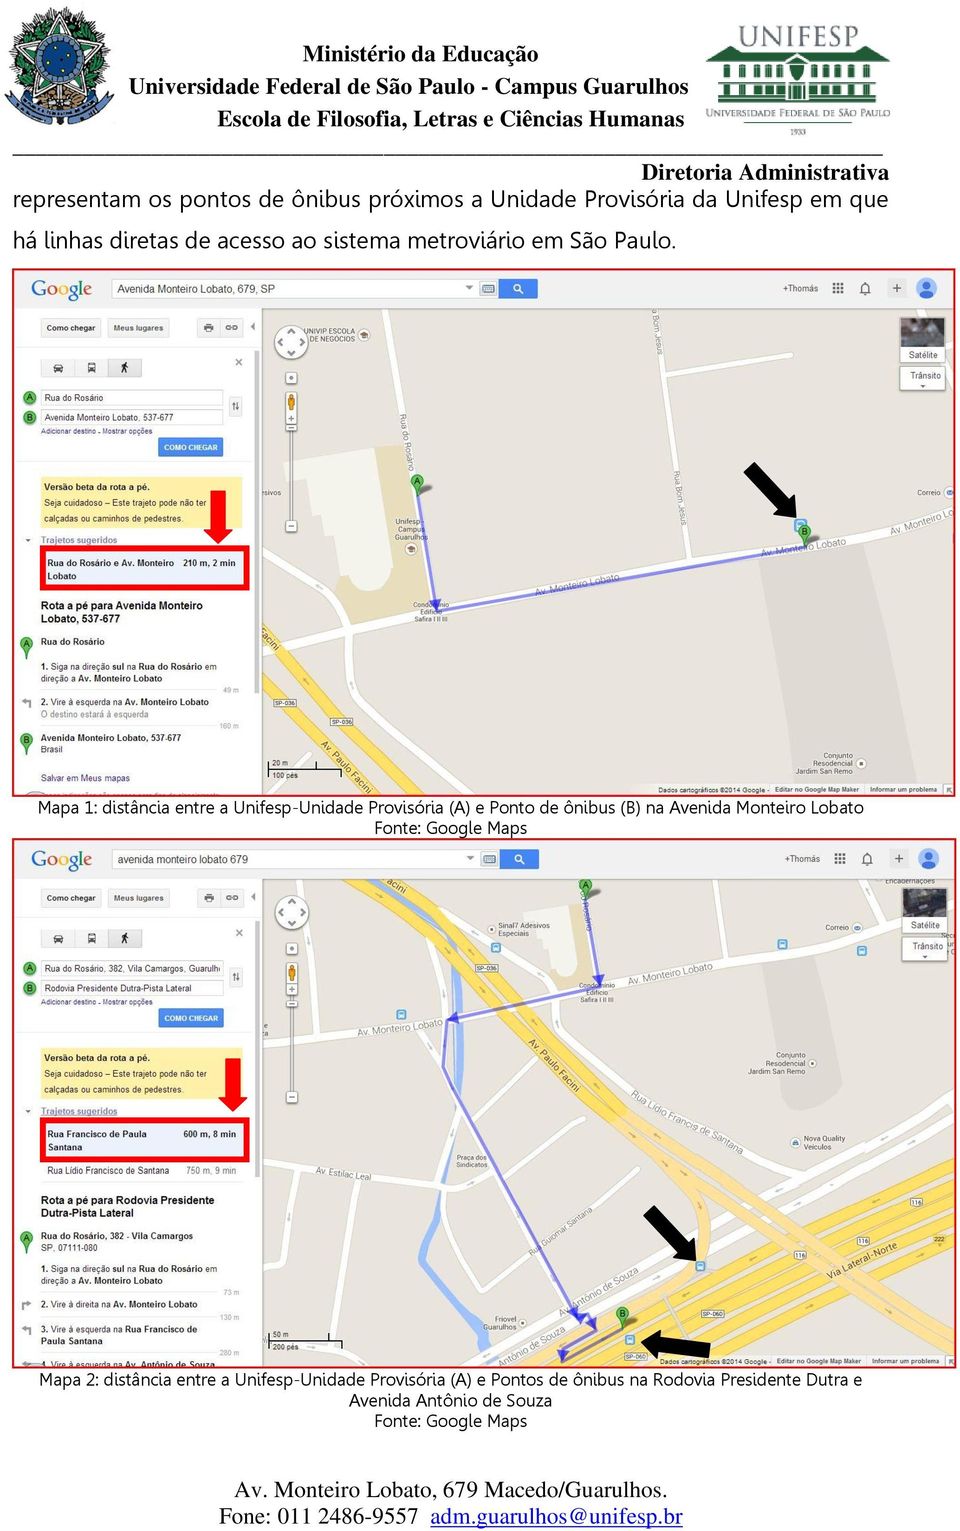 Mapa 1: distância entre a Unifesp-Unidade Provisória (A) e Ponto de ônibus (B) na Avenida Monteiro